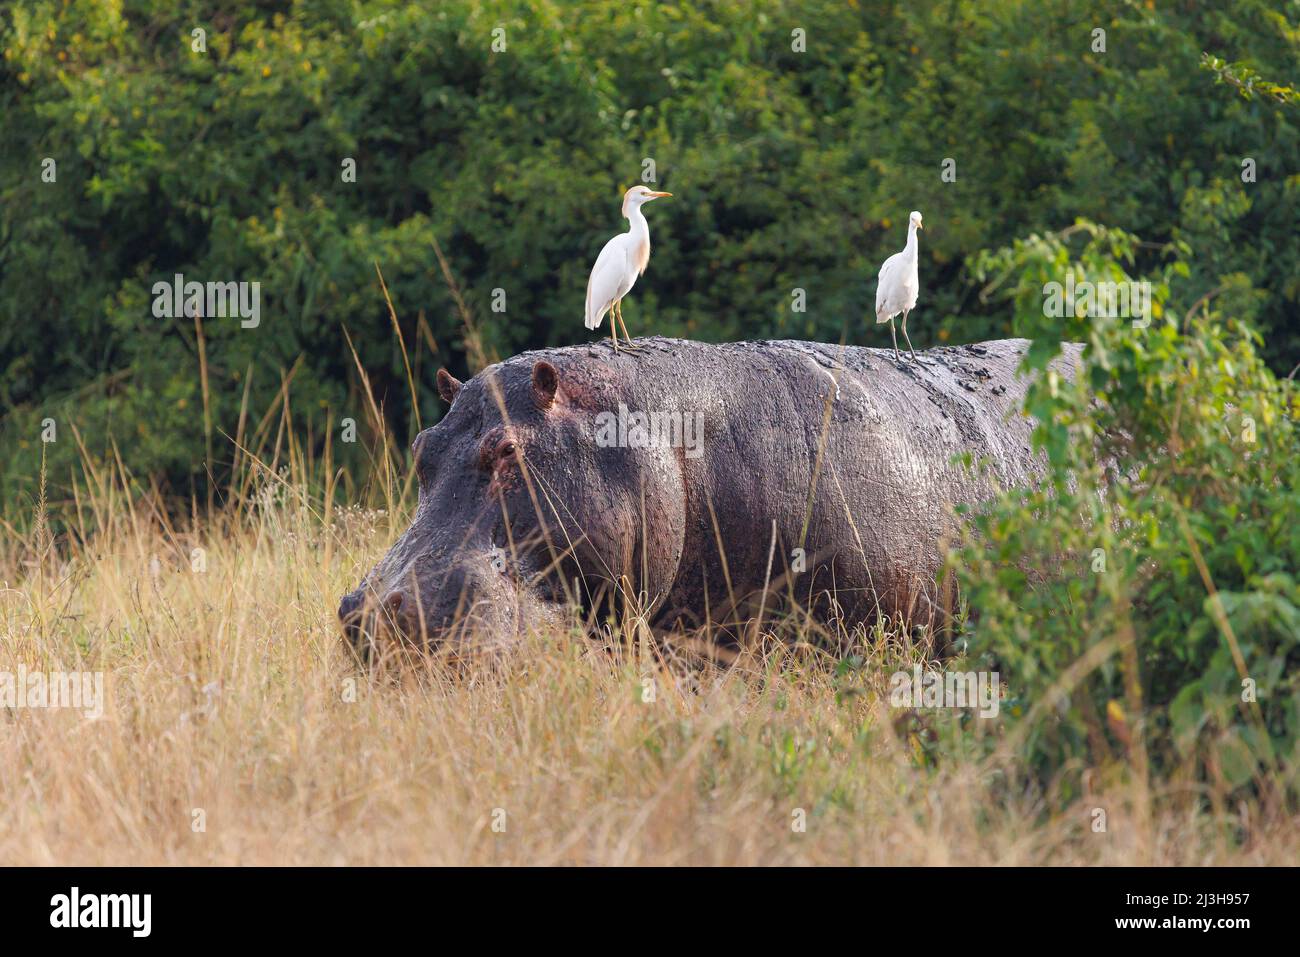 Uganda, Rubirizi district, Katunguru, Queen Elizabeth National Park, cattle egrest on an Hippopotamus Stock Photo